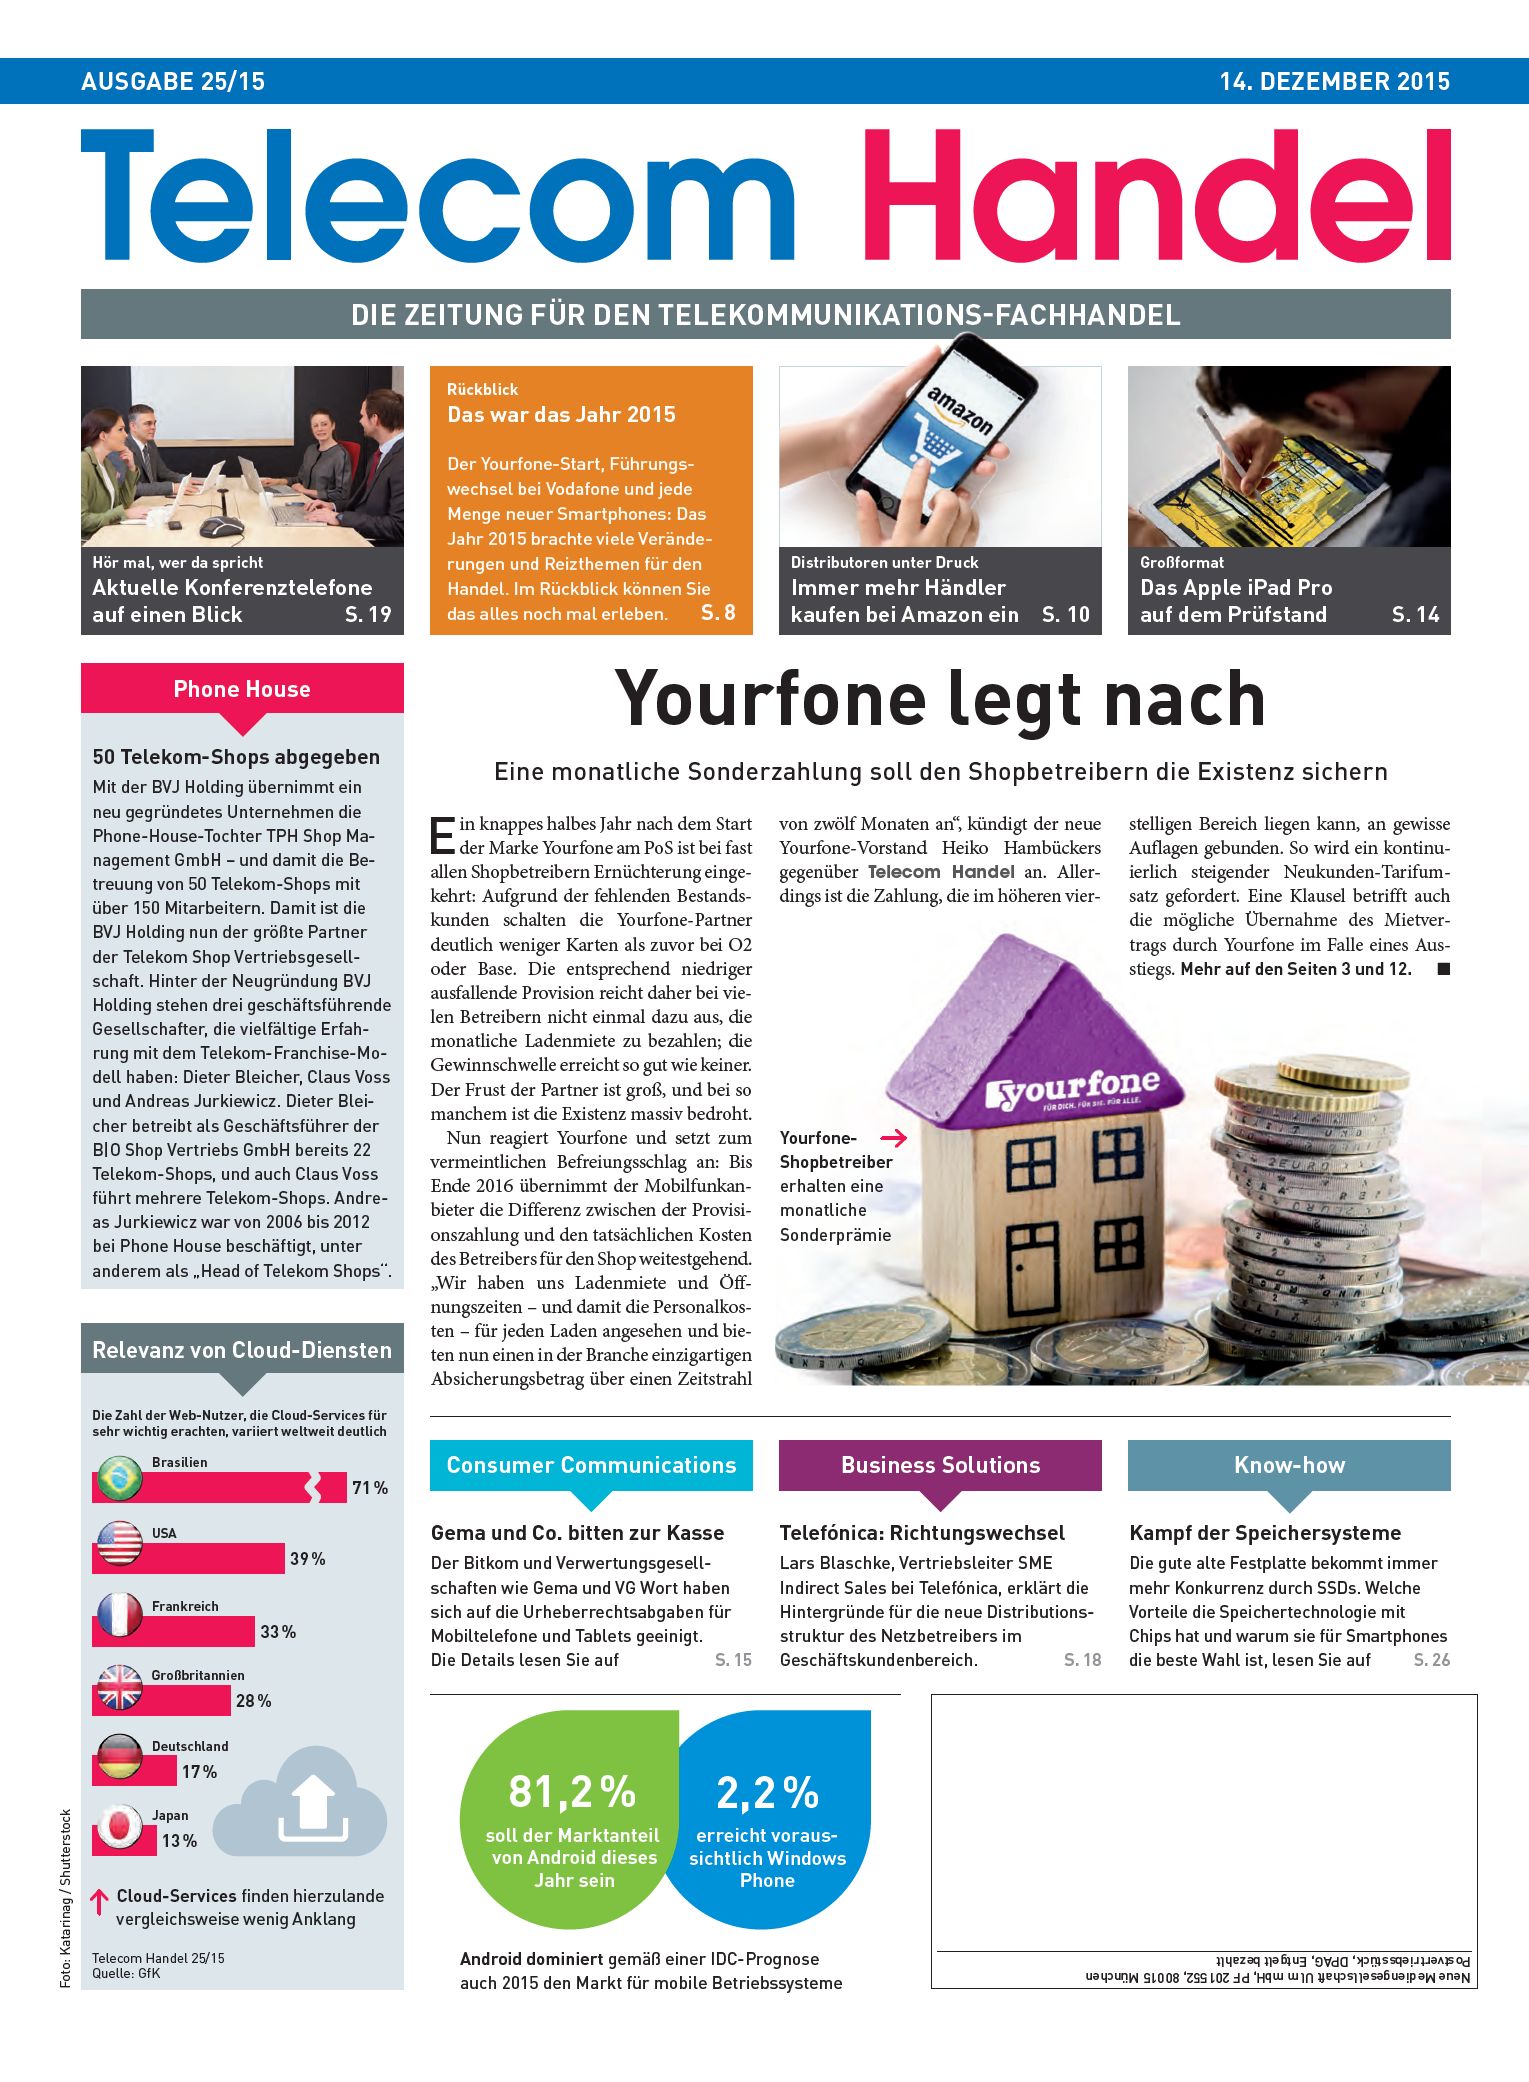 Telecom Handel Ausgabe 25/2015